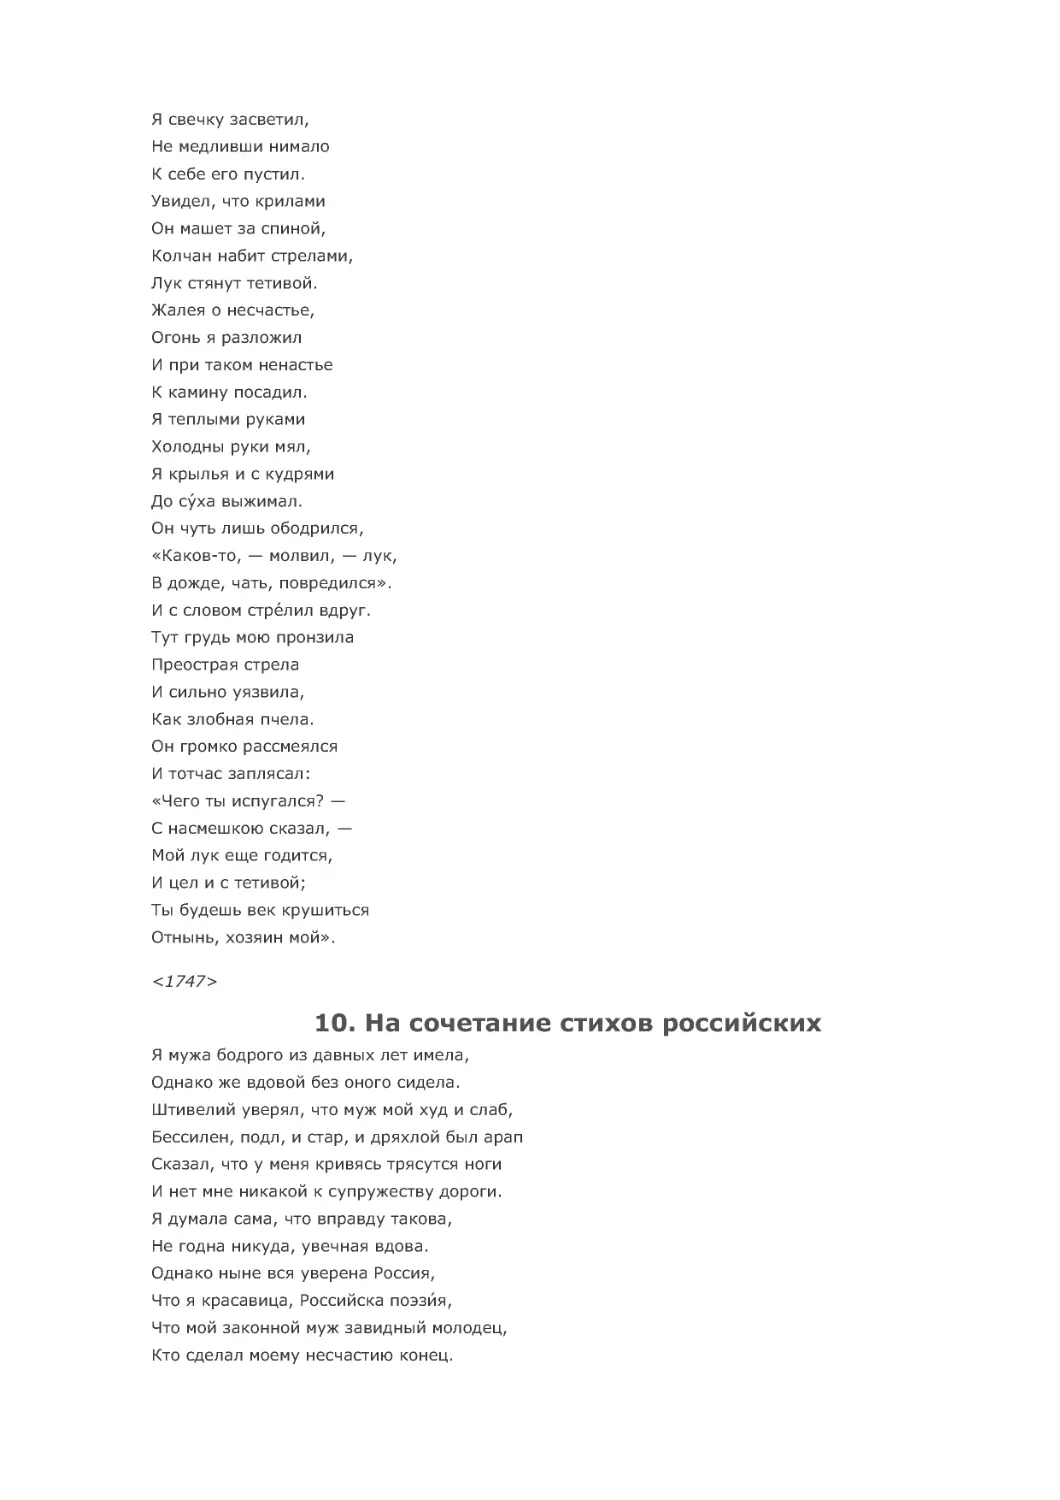 10. На сочетание стихов российских